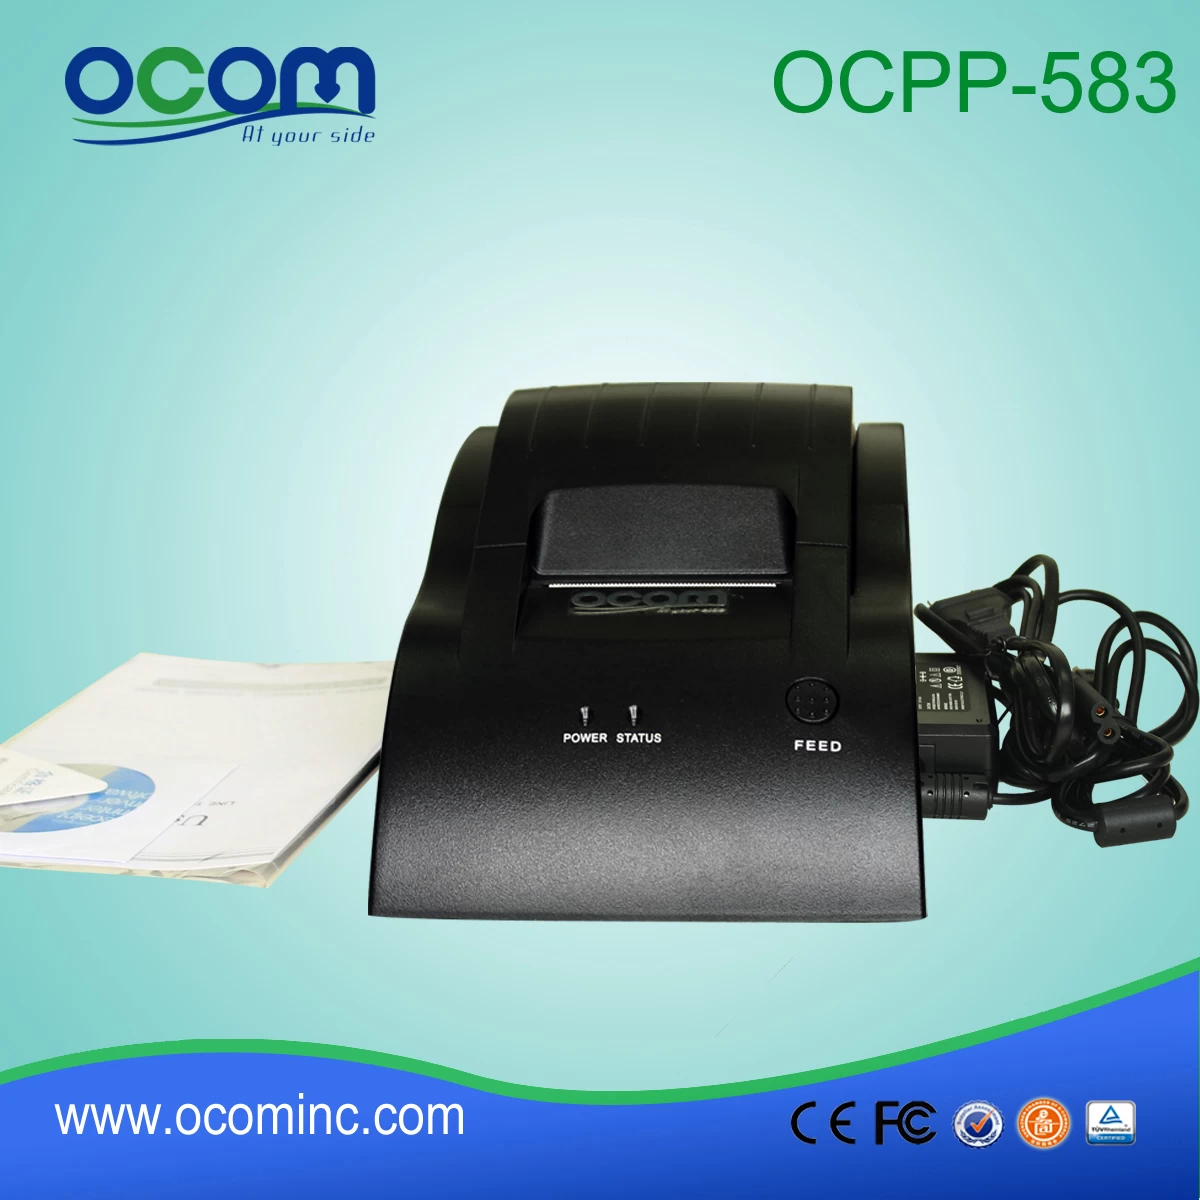 OCPP-583: 2015 high quality cheap thermal printer module